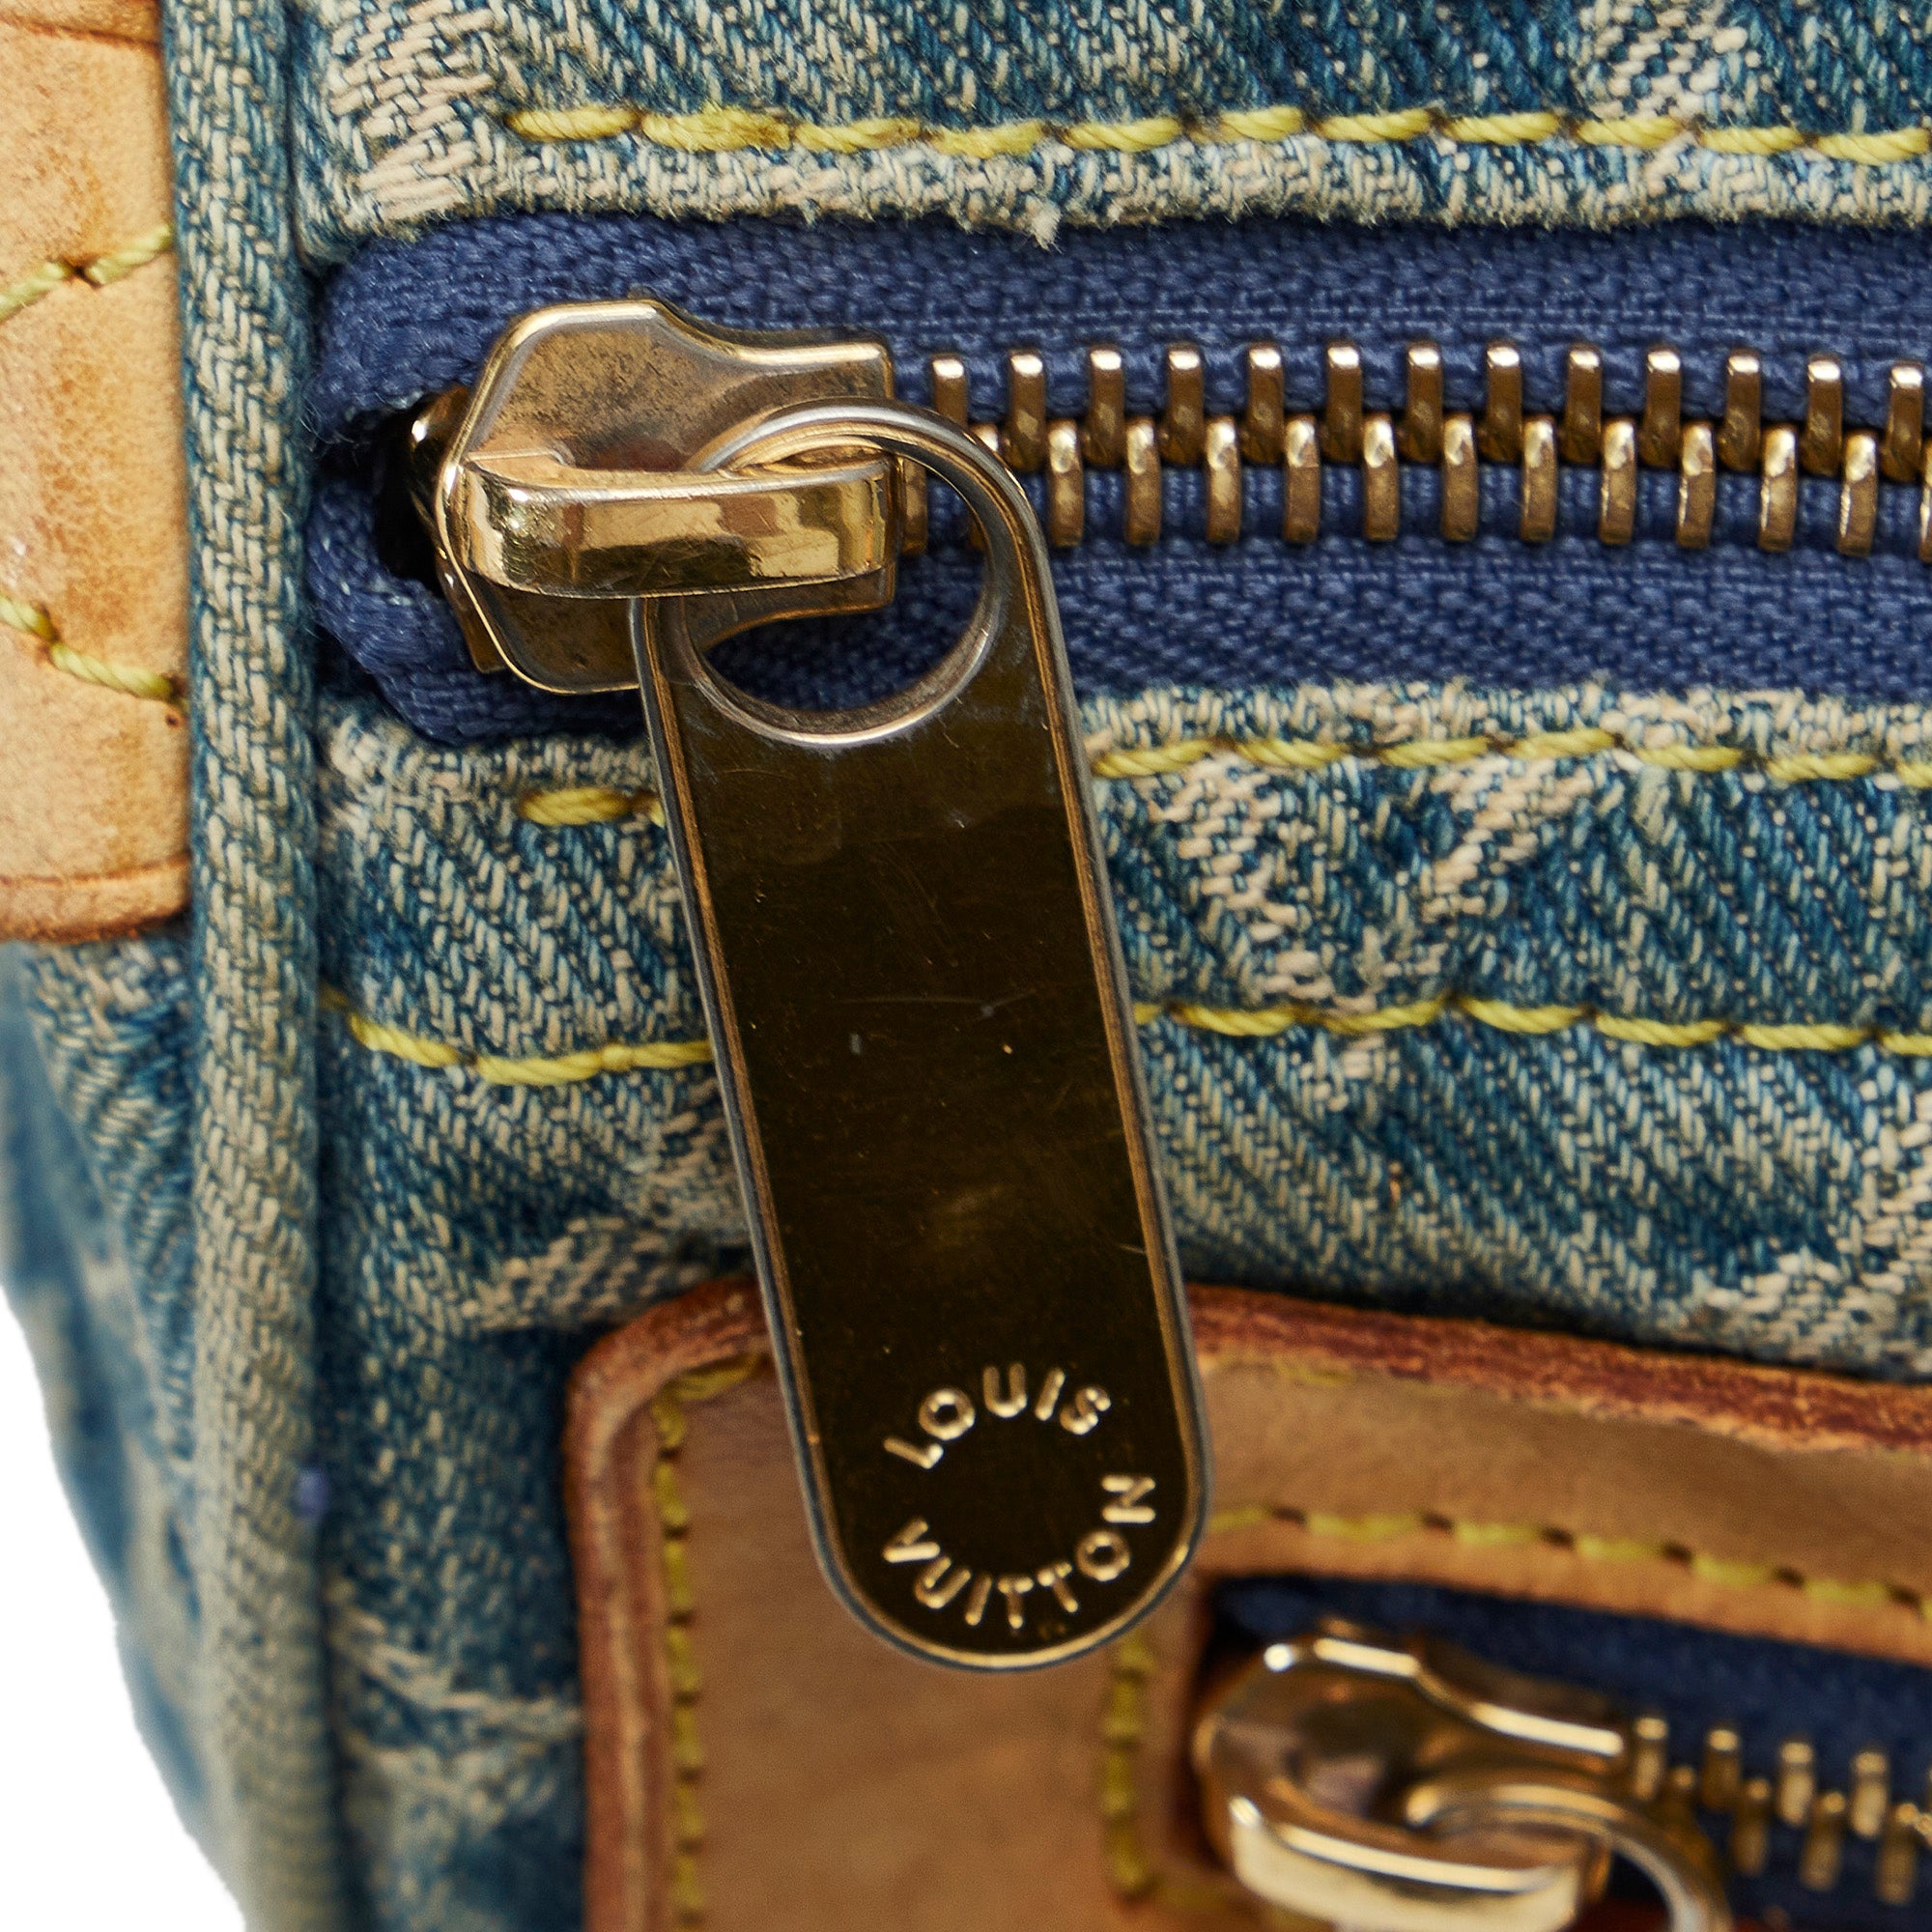 Louis Vuitton Blue Denim Patchwork Speedy 30 Handbag